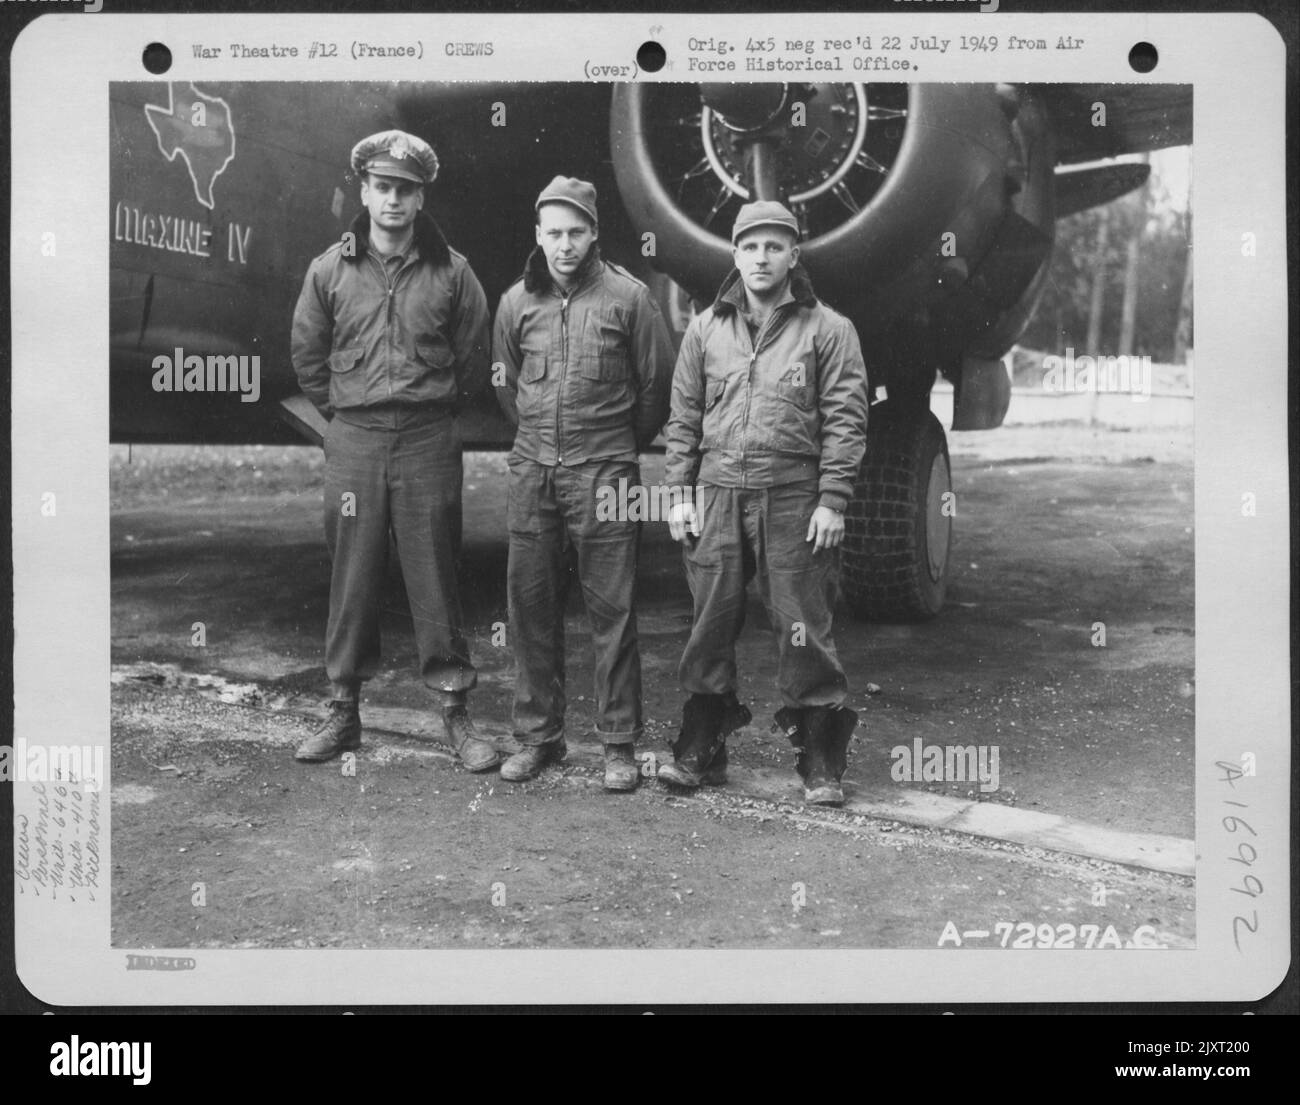 Il Lt. Pengelly e l'equipaggio dello Squadrone della bomba del 646Th, il gruppo della bomba del 410Th, posano accanto al Douglas A-20 'Maxine IV' presso Una base dell'aeronautica militare del 9th in Francia. Sono, da sinistra a destra: Lt. Pengelly, CPL. Furlow e CPL. Mover. Ottobre 1944. Foto Stock